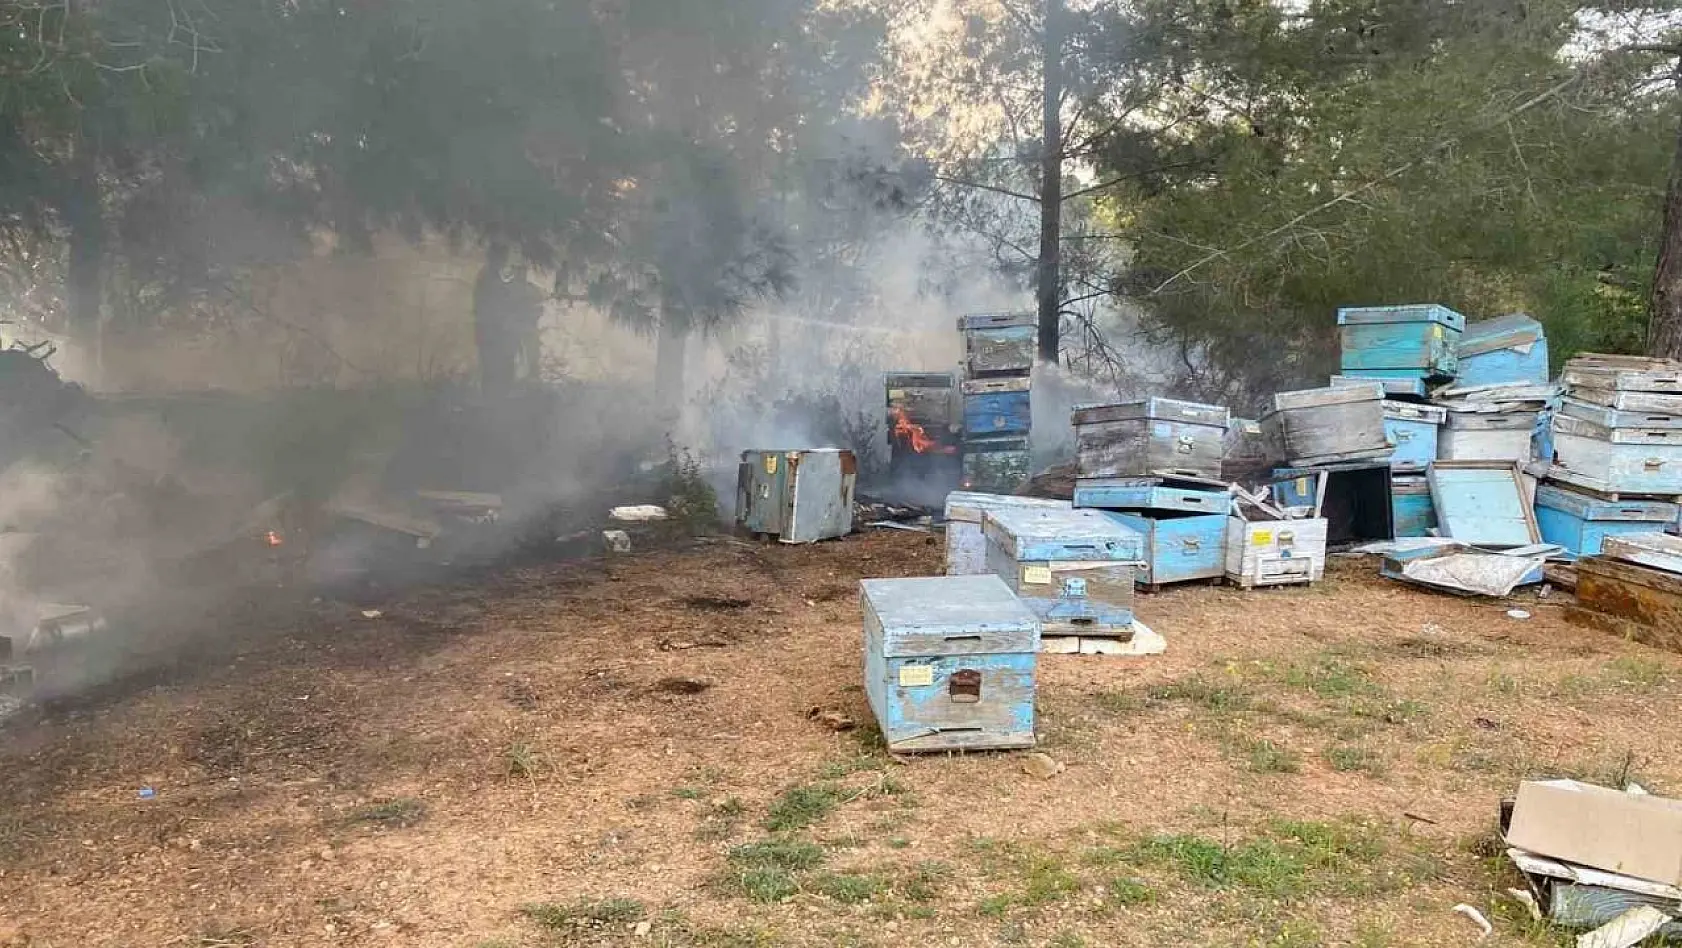 Datça'daki orman yangınında arı kovanları zarar gördü